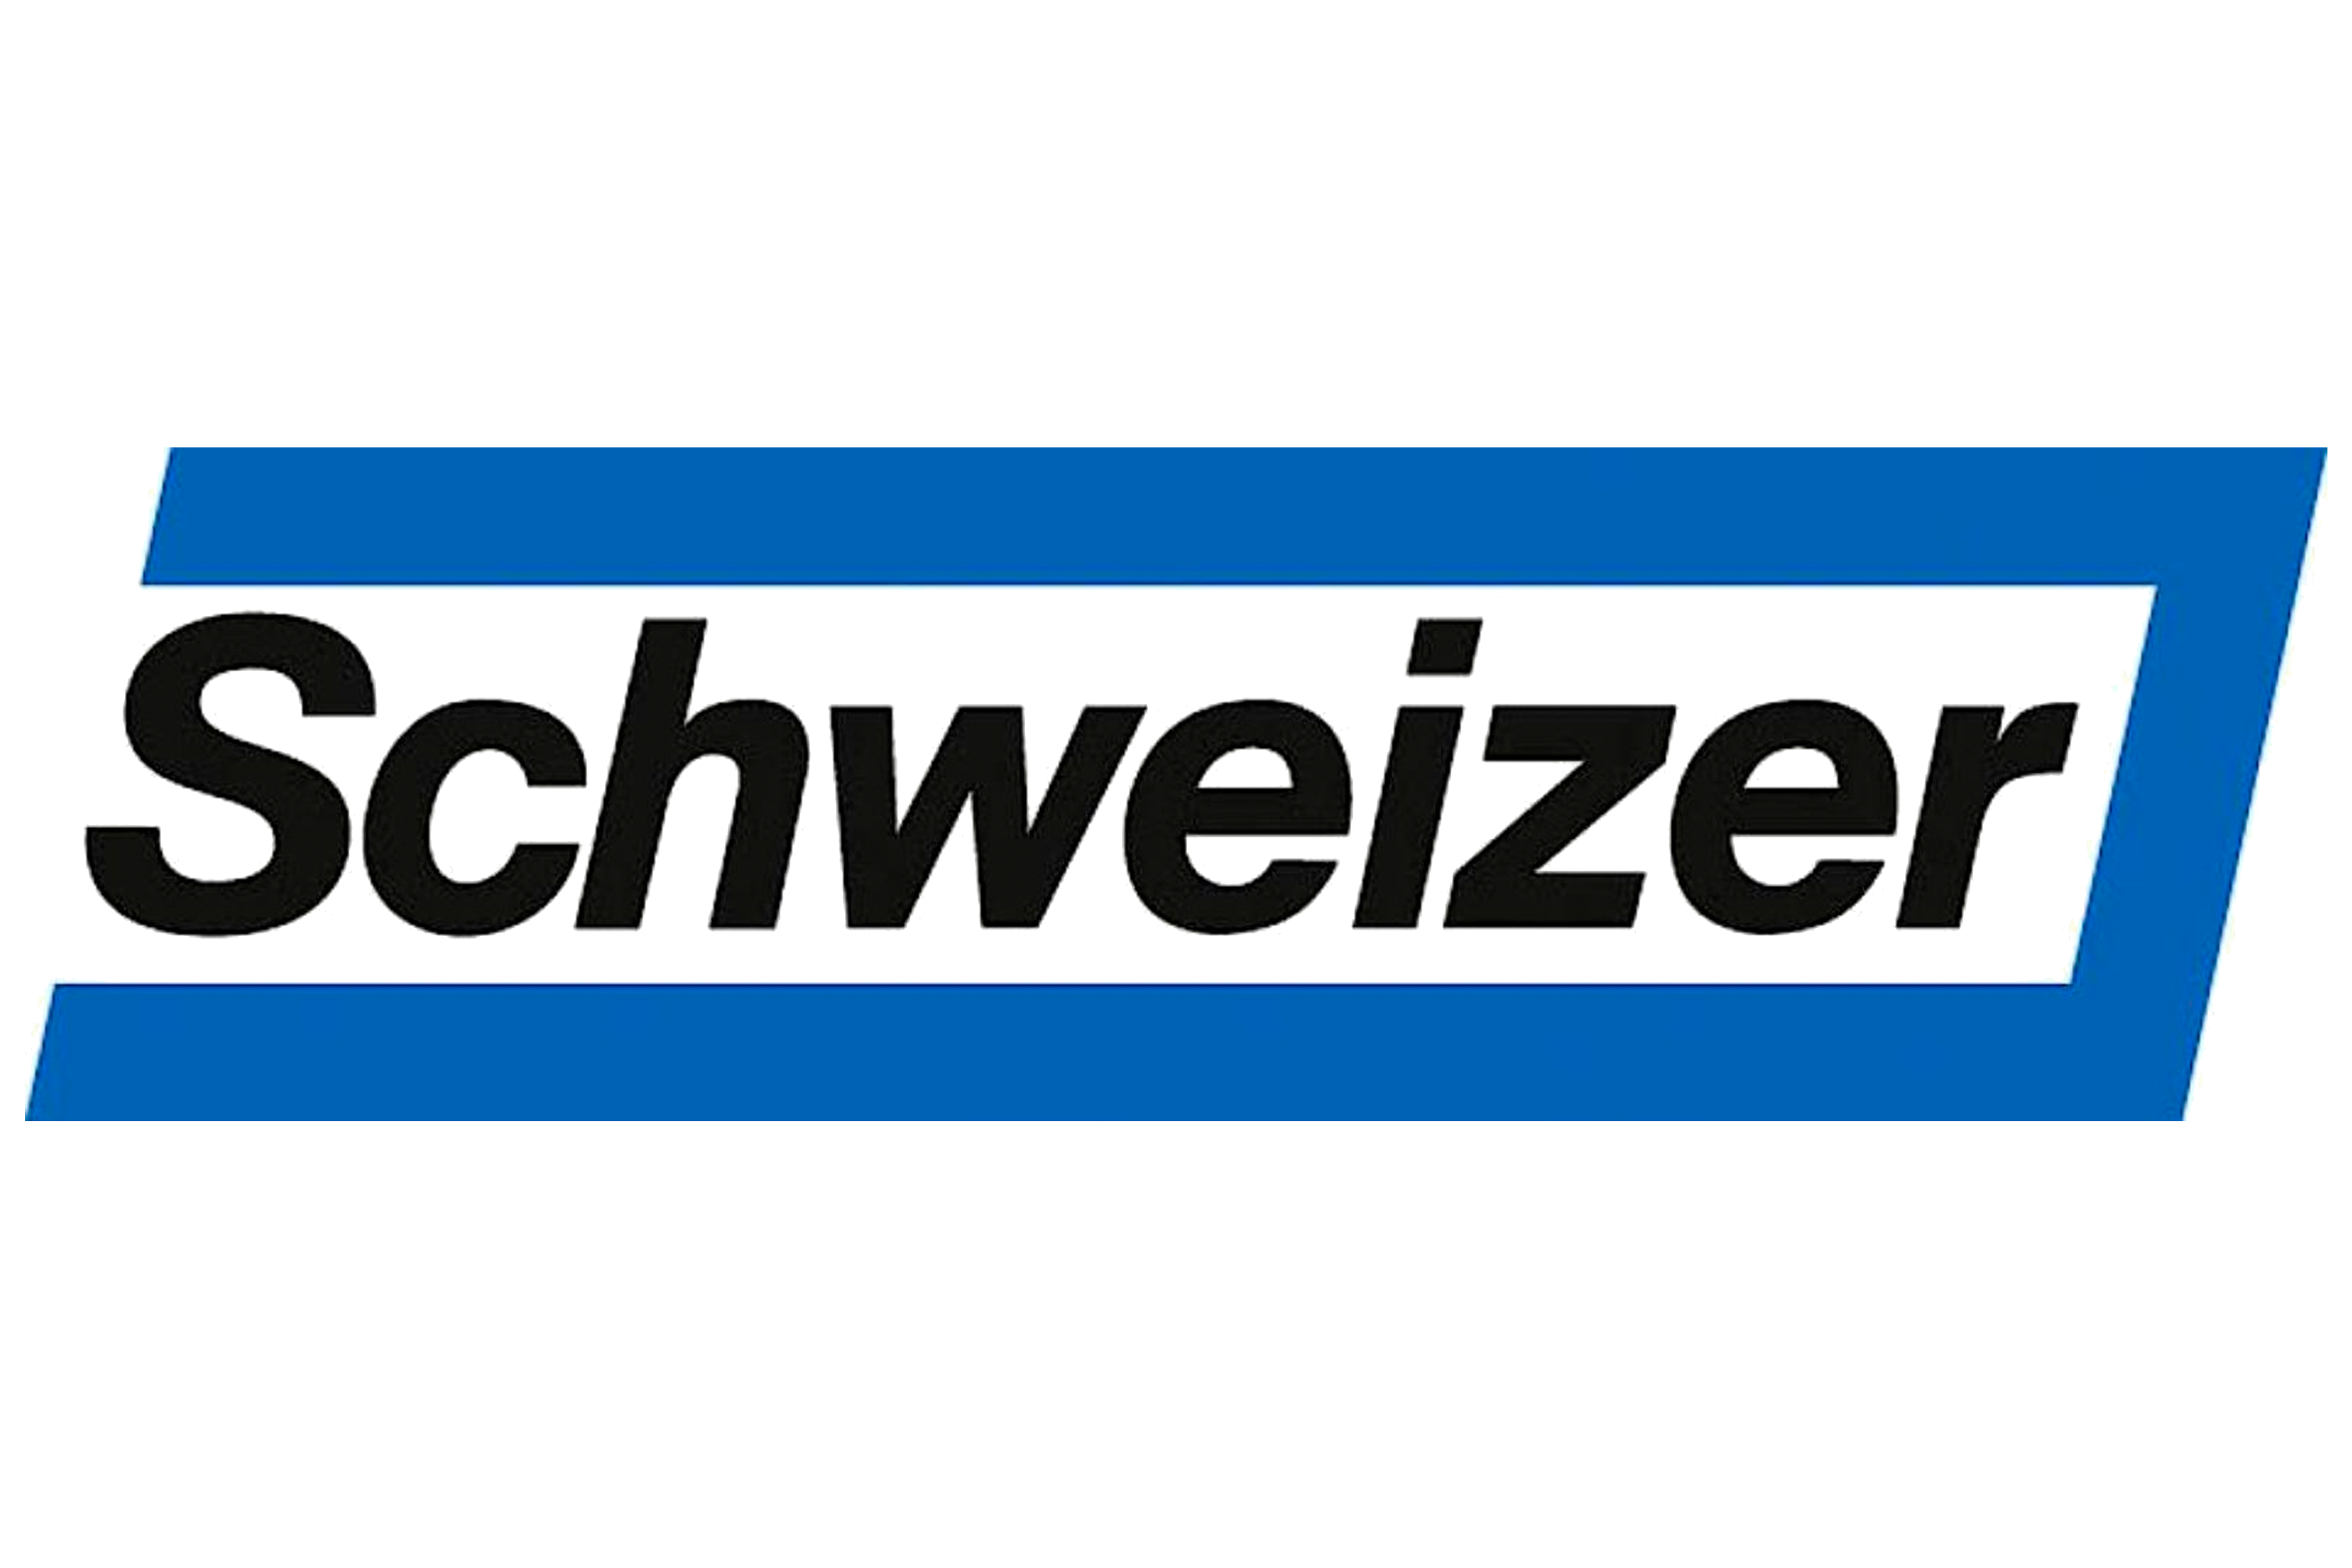 ernstschweizer_logo.png